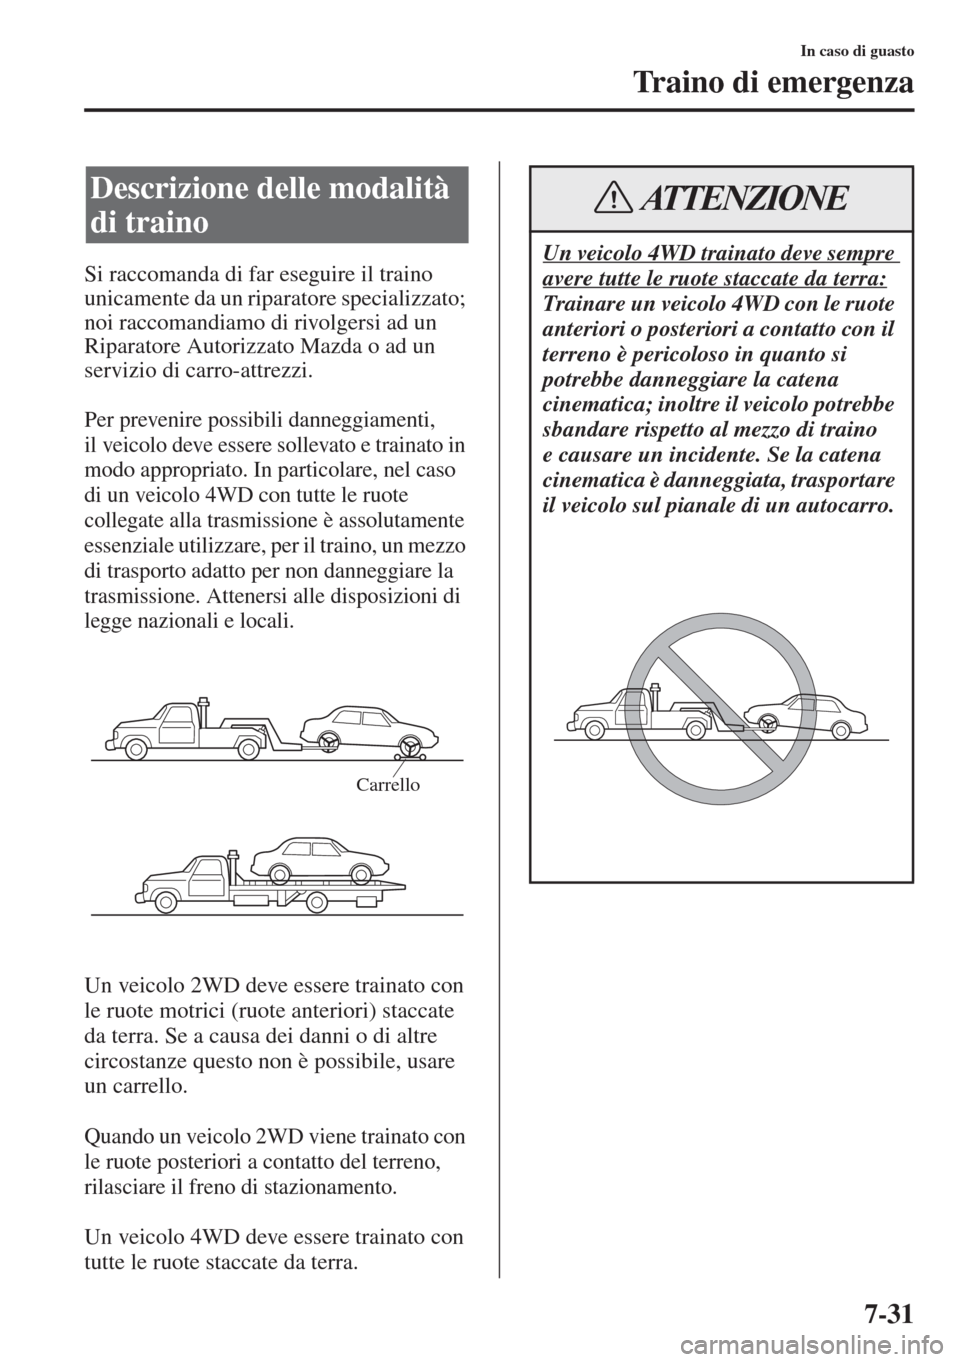 MAZDA MODEL 6 2015  Manuale del proprietario (in Italian)  7-31
In caso di guasto
Traino di emergenza
Si raccomanda di far eseguire il traino 
unicamente da un riparatore specializzato; 
noi raccomandiamo di rivolgersi ad un 
Riparatore Autorizzato Mazda o ad